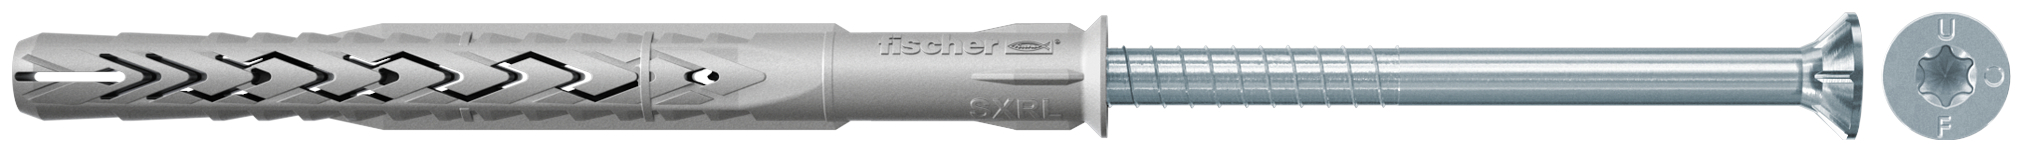 fischer Tasselli prolungati SXRL 10X140 T (1 Pz.) Tassello prolungato in nylon con marcatura CE con vite premontata T.S.P. impronta torx fie2368